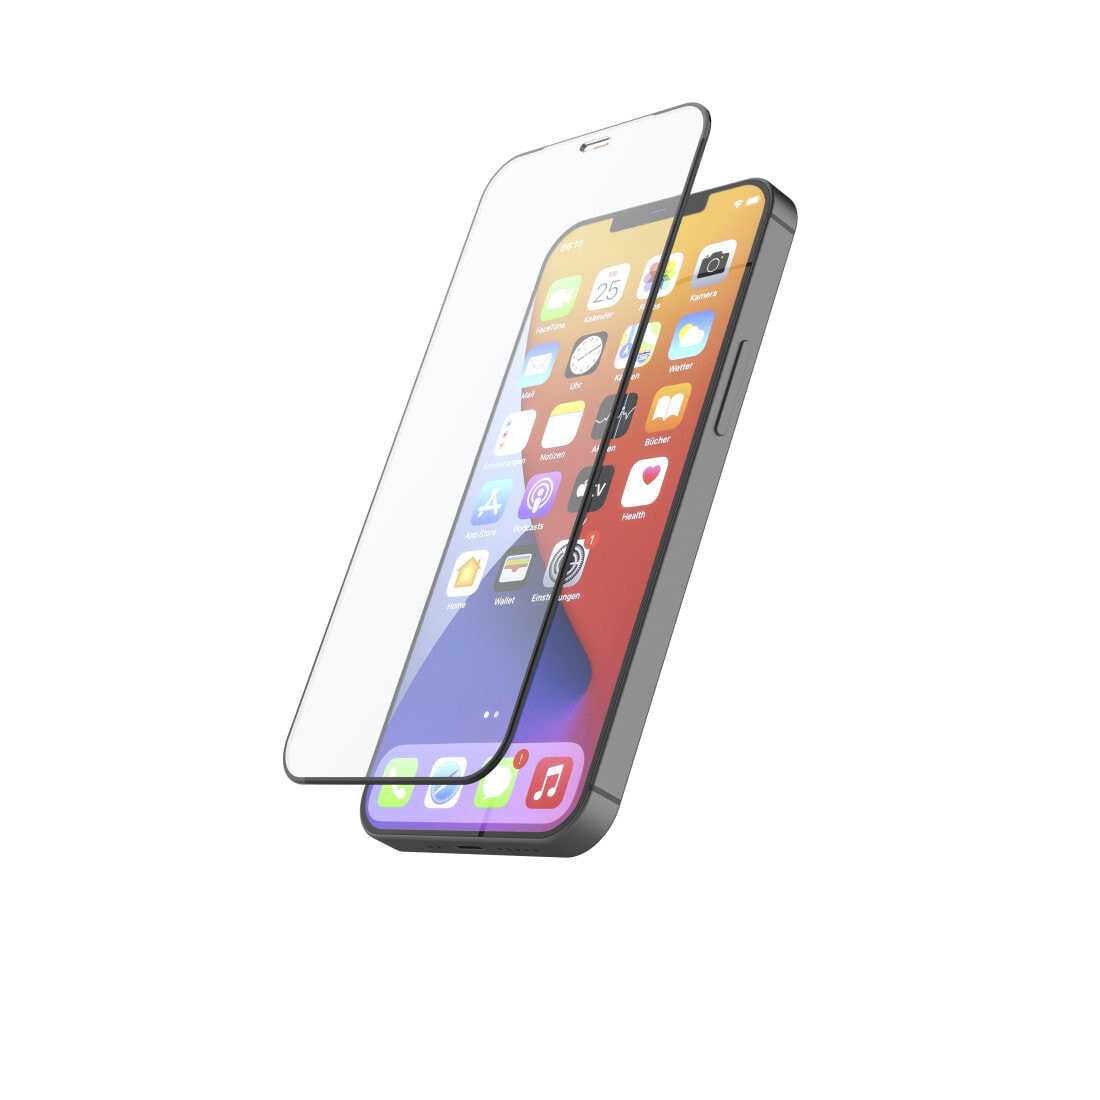 Hama 00213008 защитная пленка / стекло для мобильного телефона Прозрачная защитная пленка Apple 1 шт